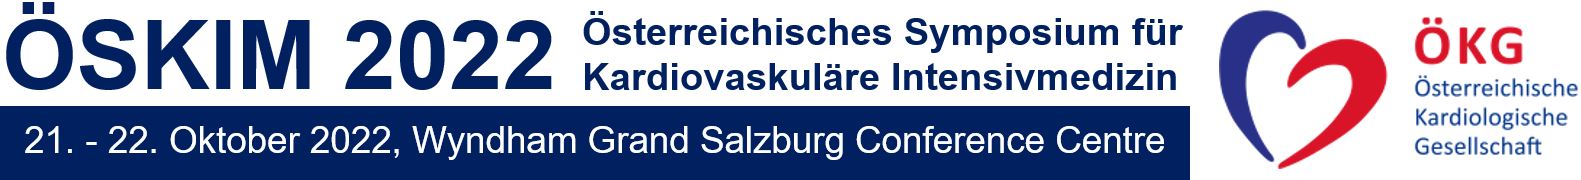 Österreichisches Symposium für Kardiovaskuläre Intensivmedizin 2022